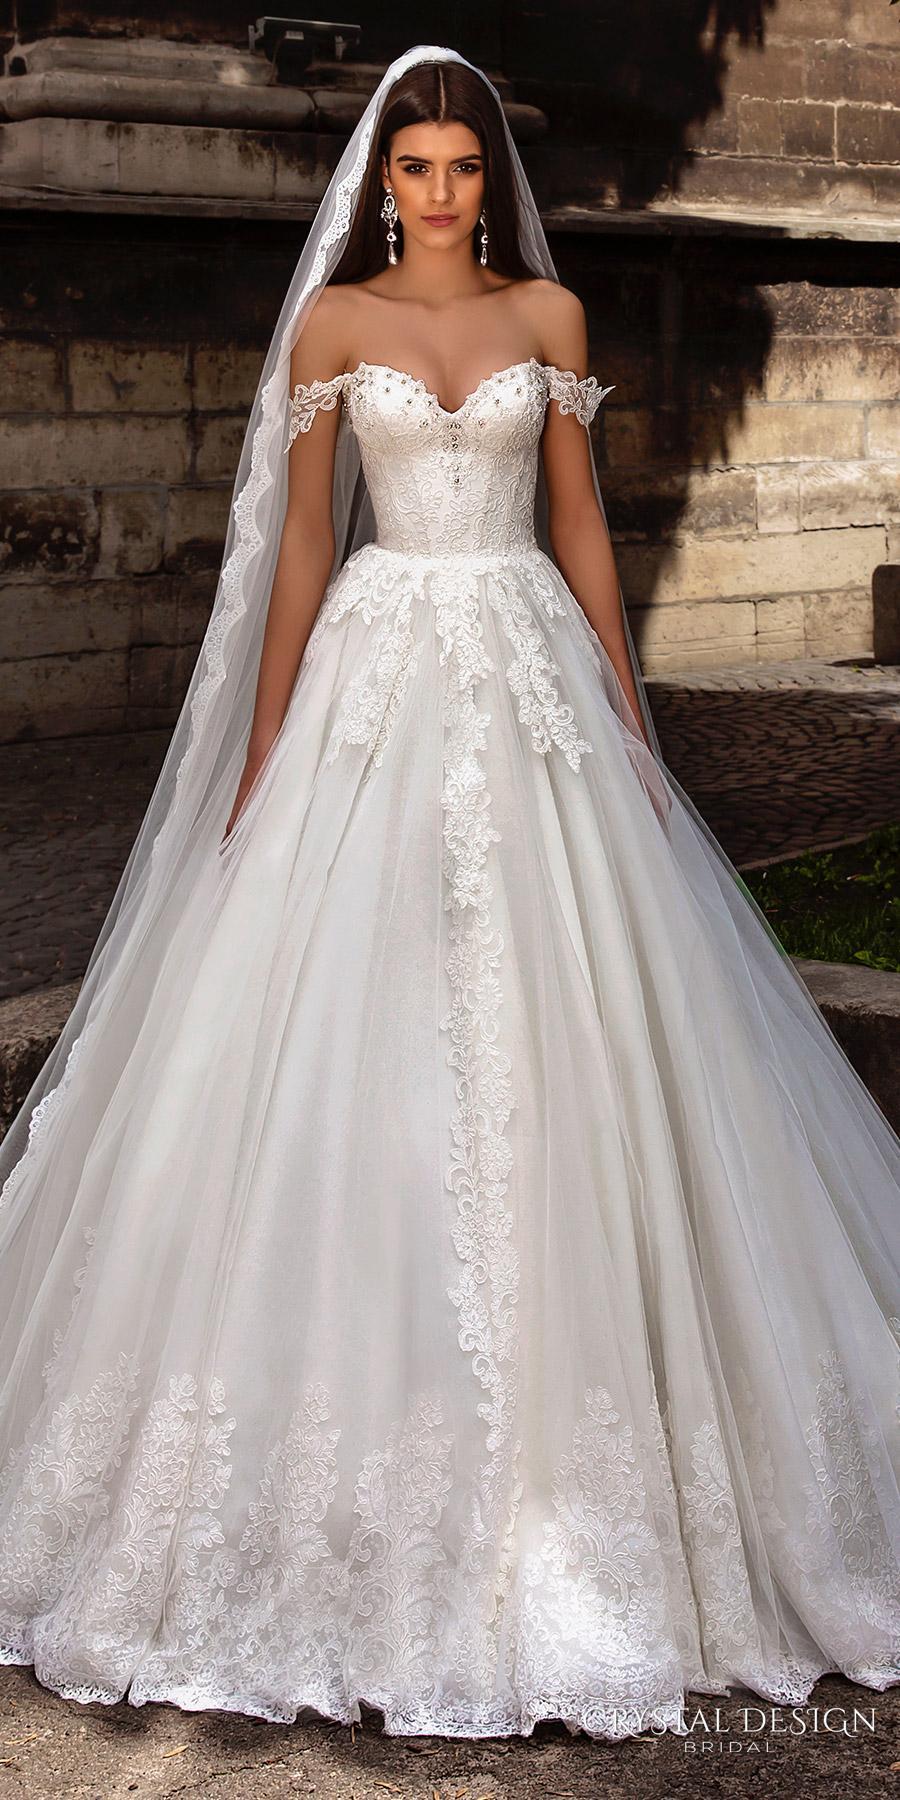 New Arrival Off-the-shoulder Lace Straps Crystal Design 2016 Wedding Dress